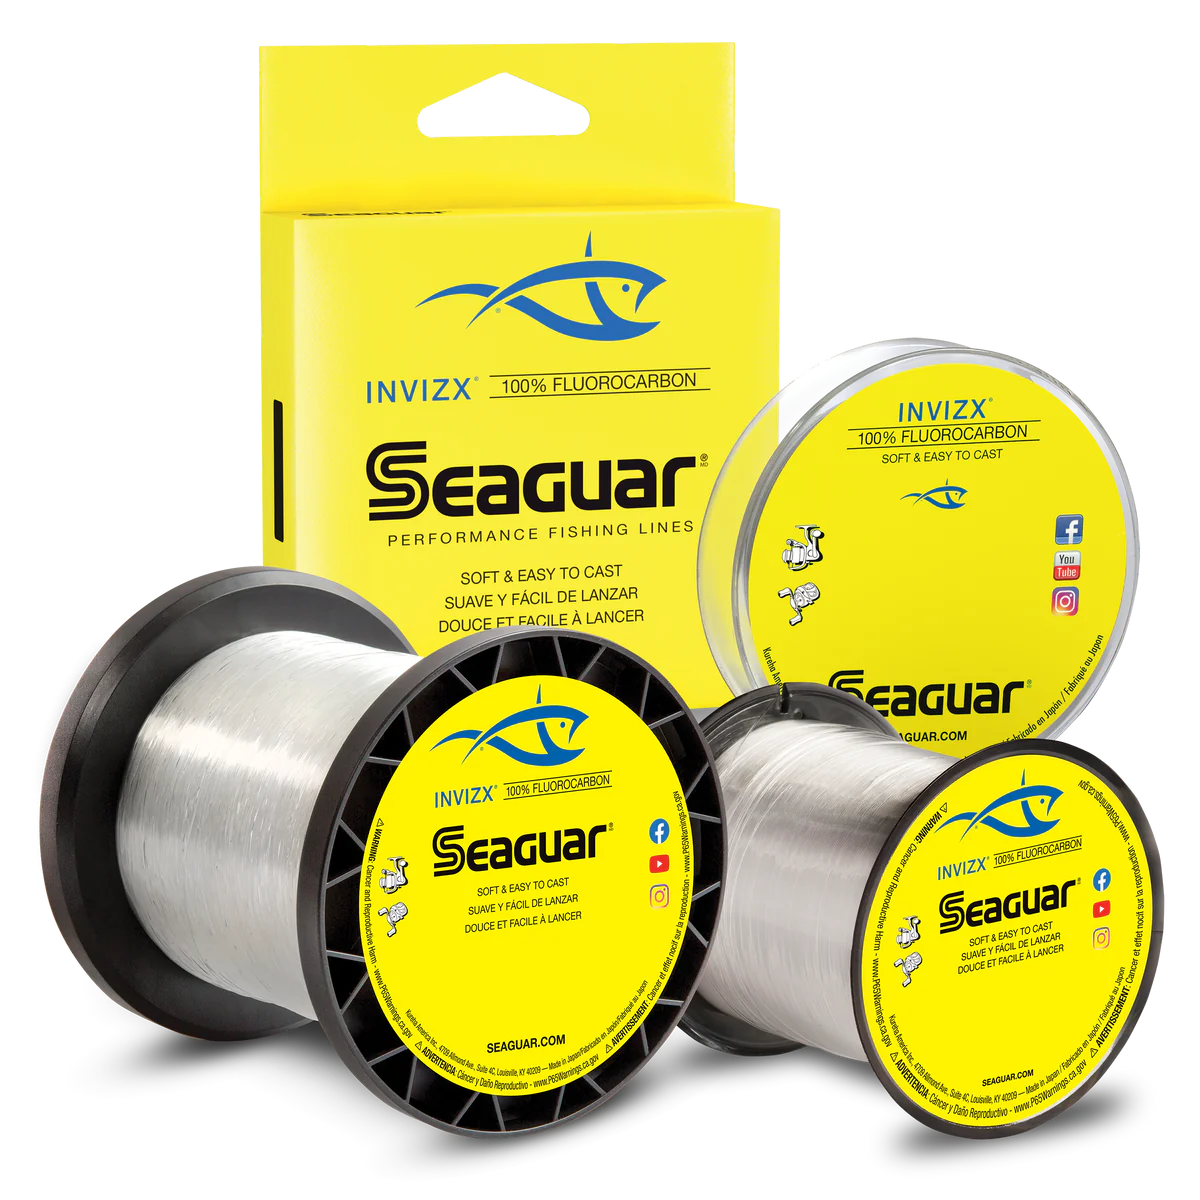 Seaguar Invizx 100% Fluorocarbon